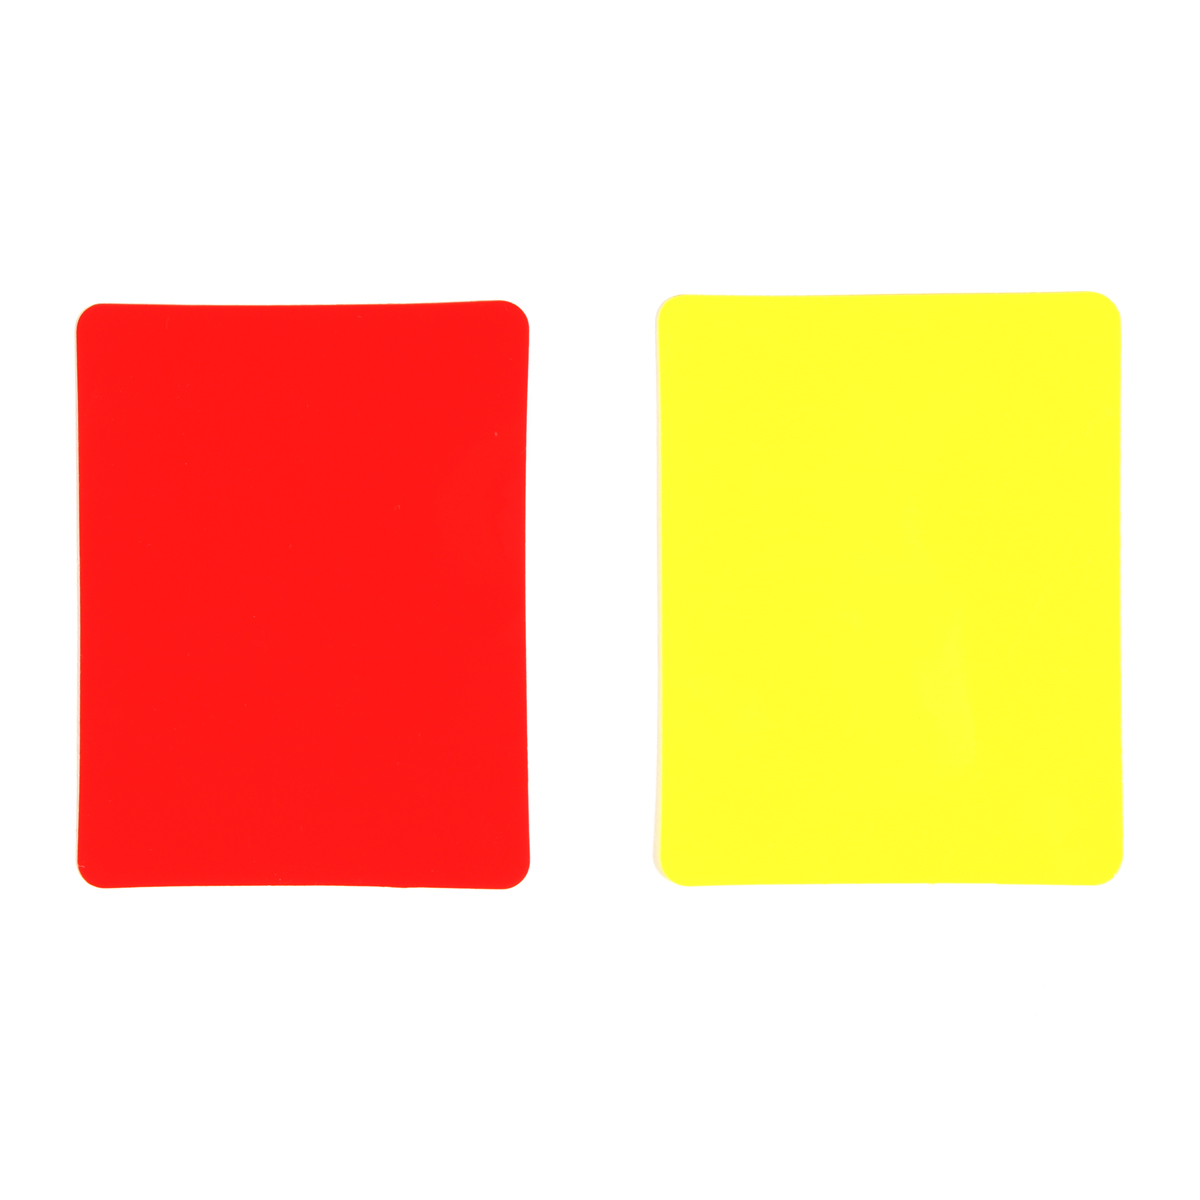 Cartões De Arbitragem Em Pvc (conjunto De 2, 1 Vermelho E 1 Amarelo)